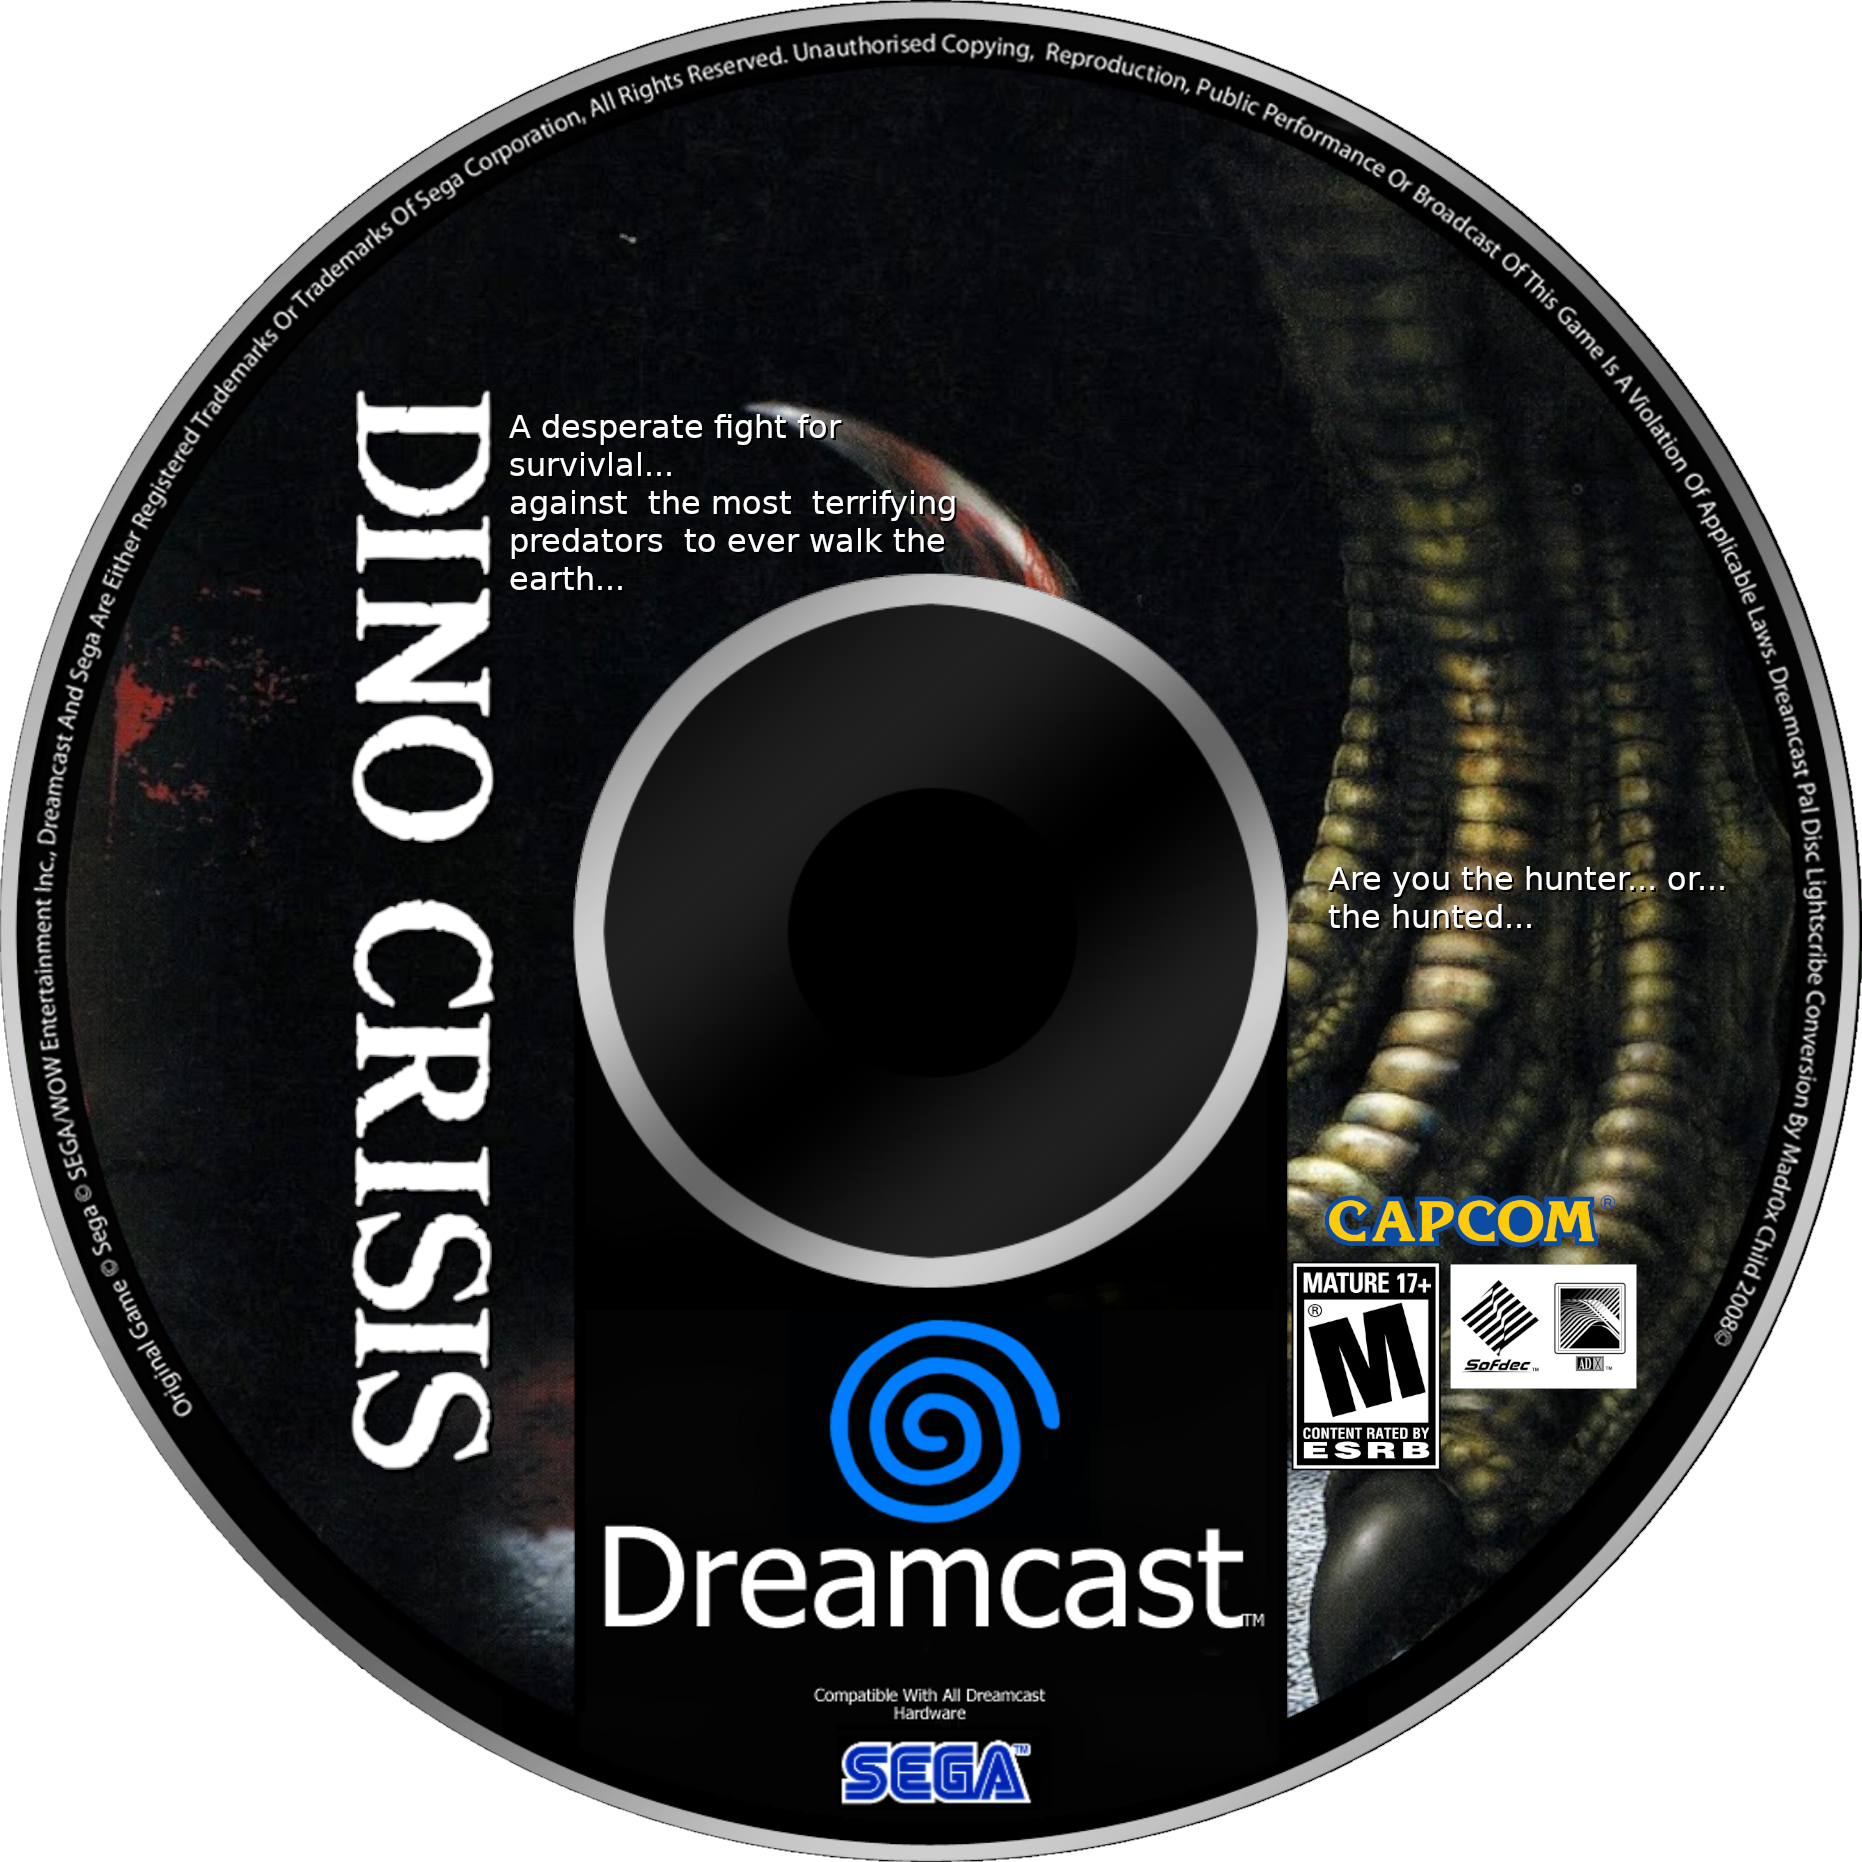 Dino_dreamcast%20CD%20EU%20V2.png